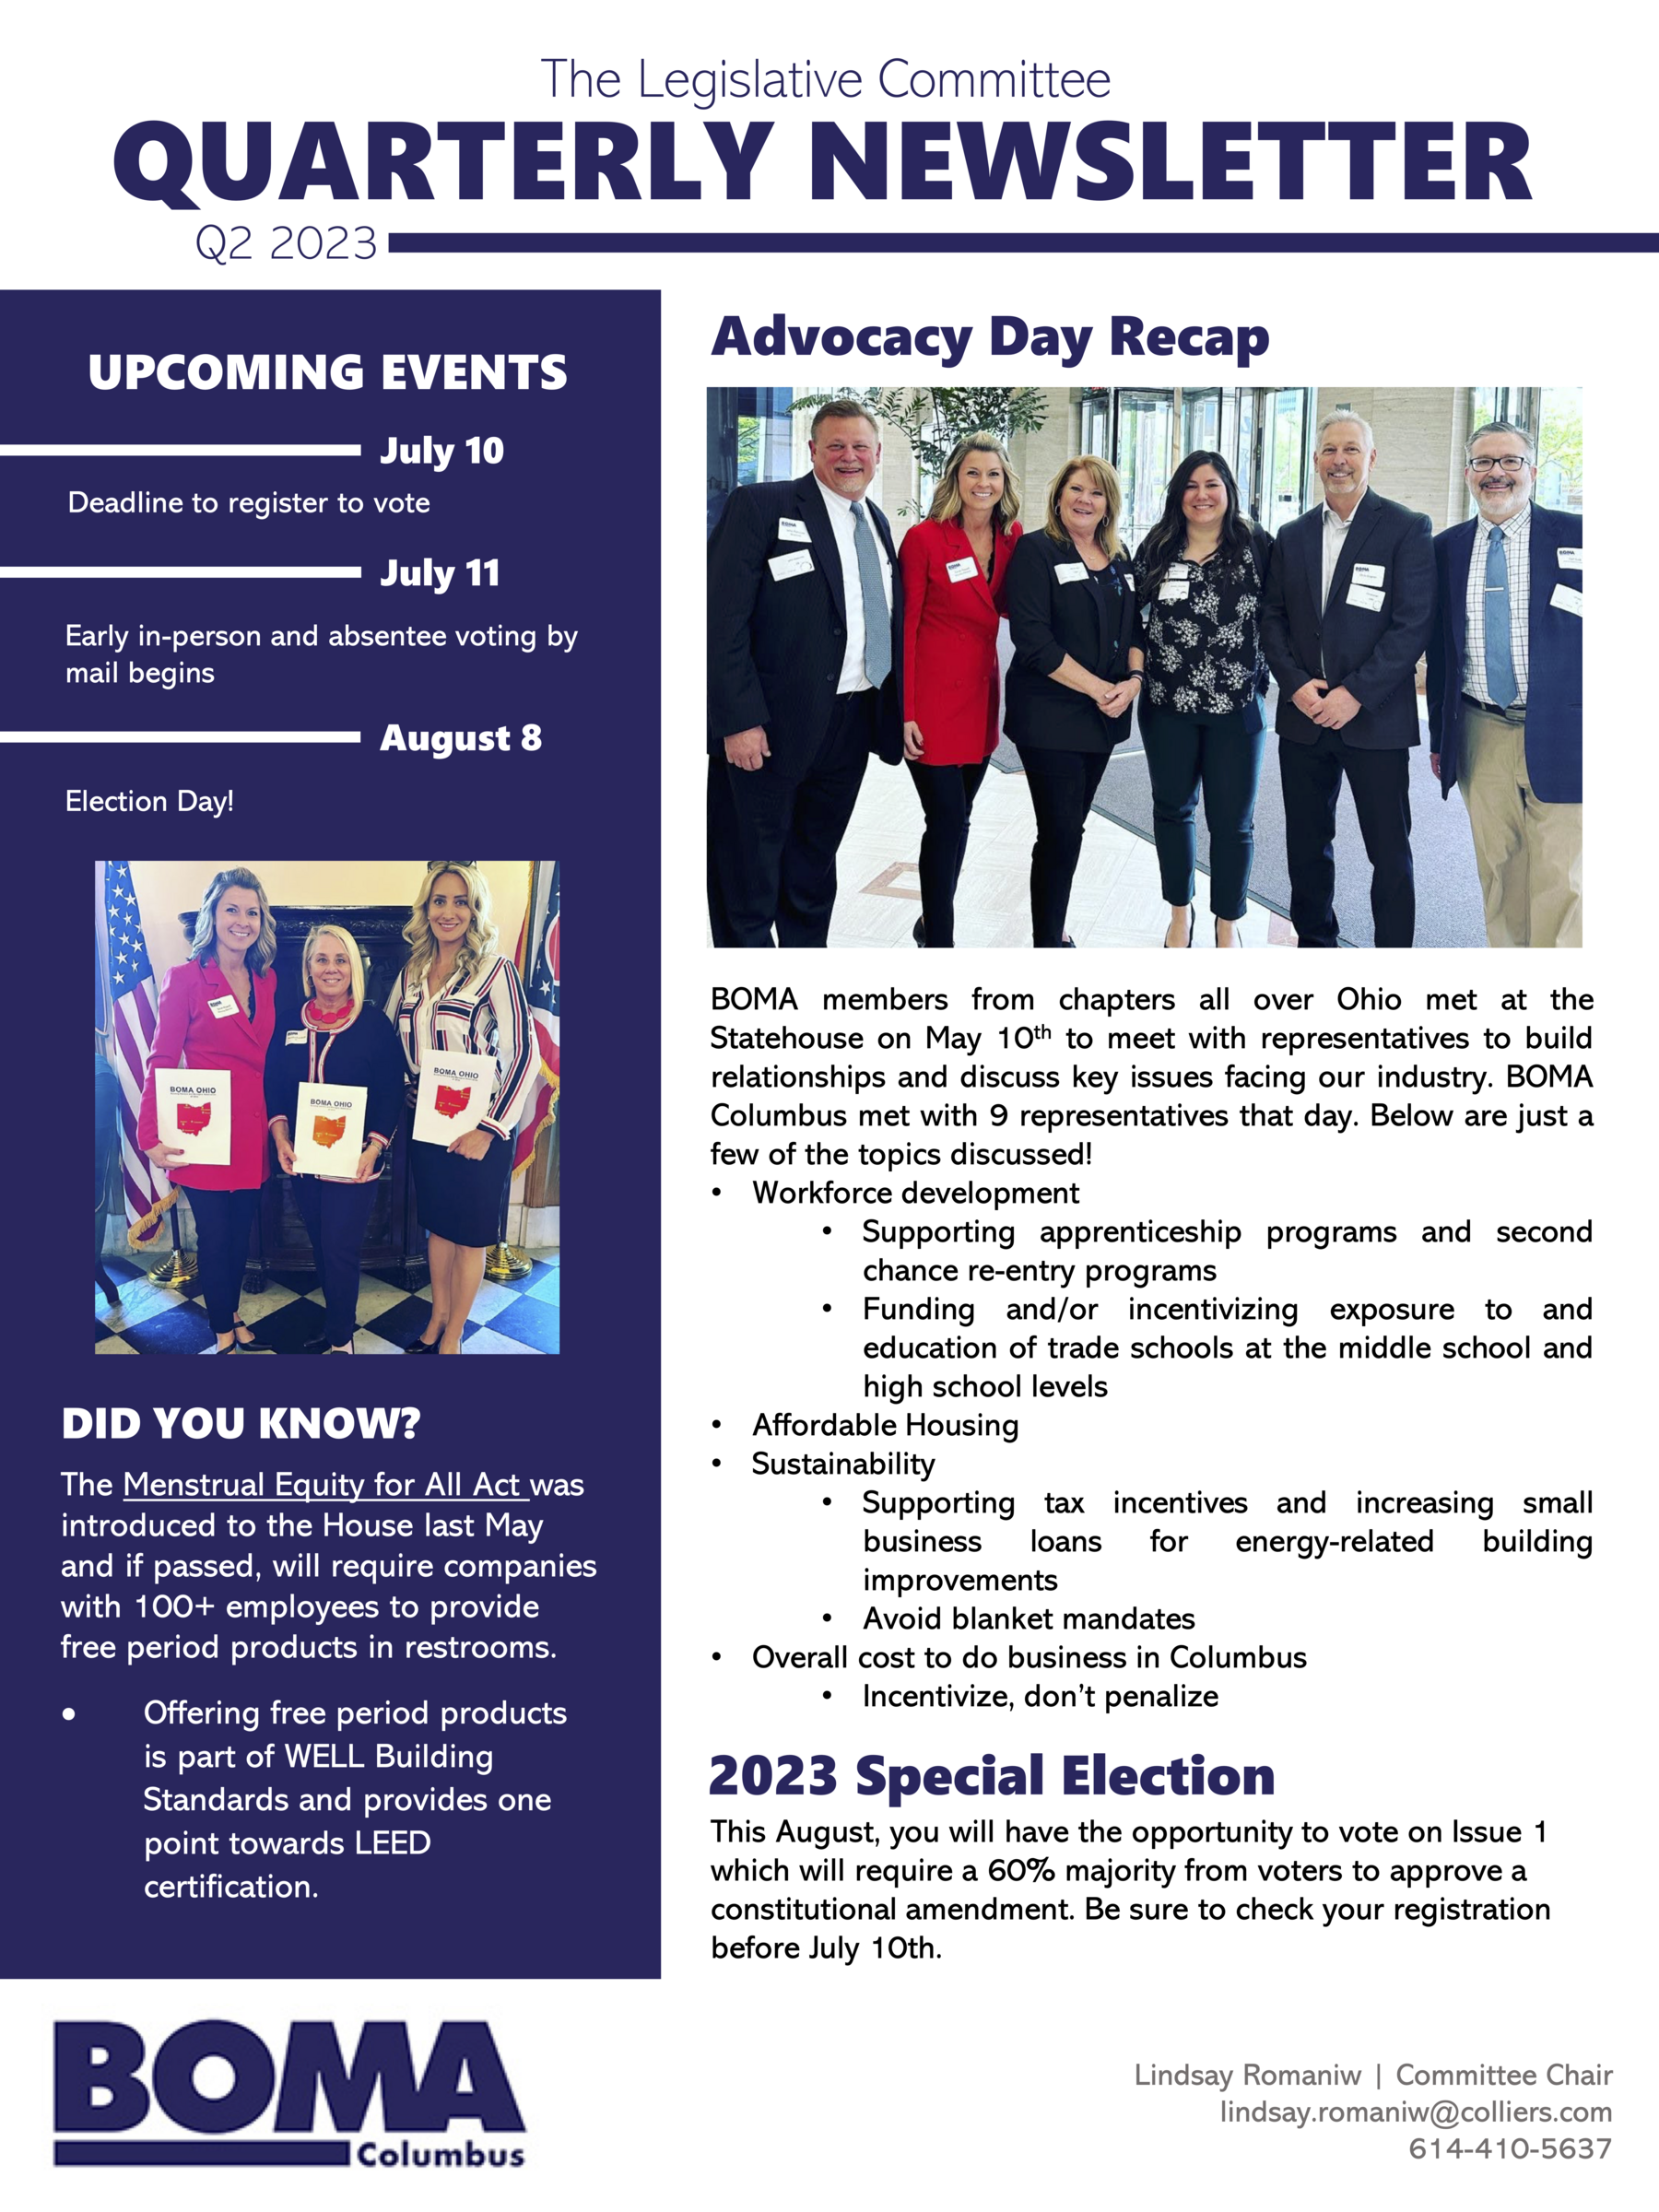 Q2 2023 Legislative Committee Newsletter